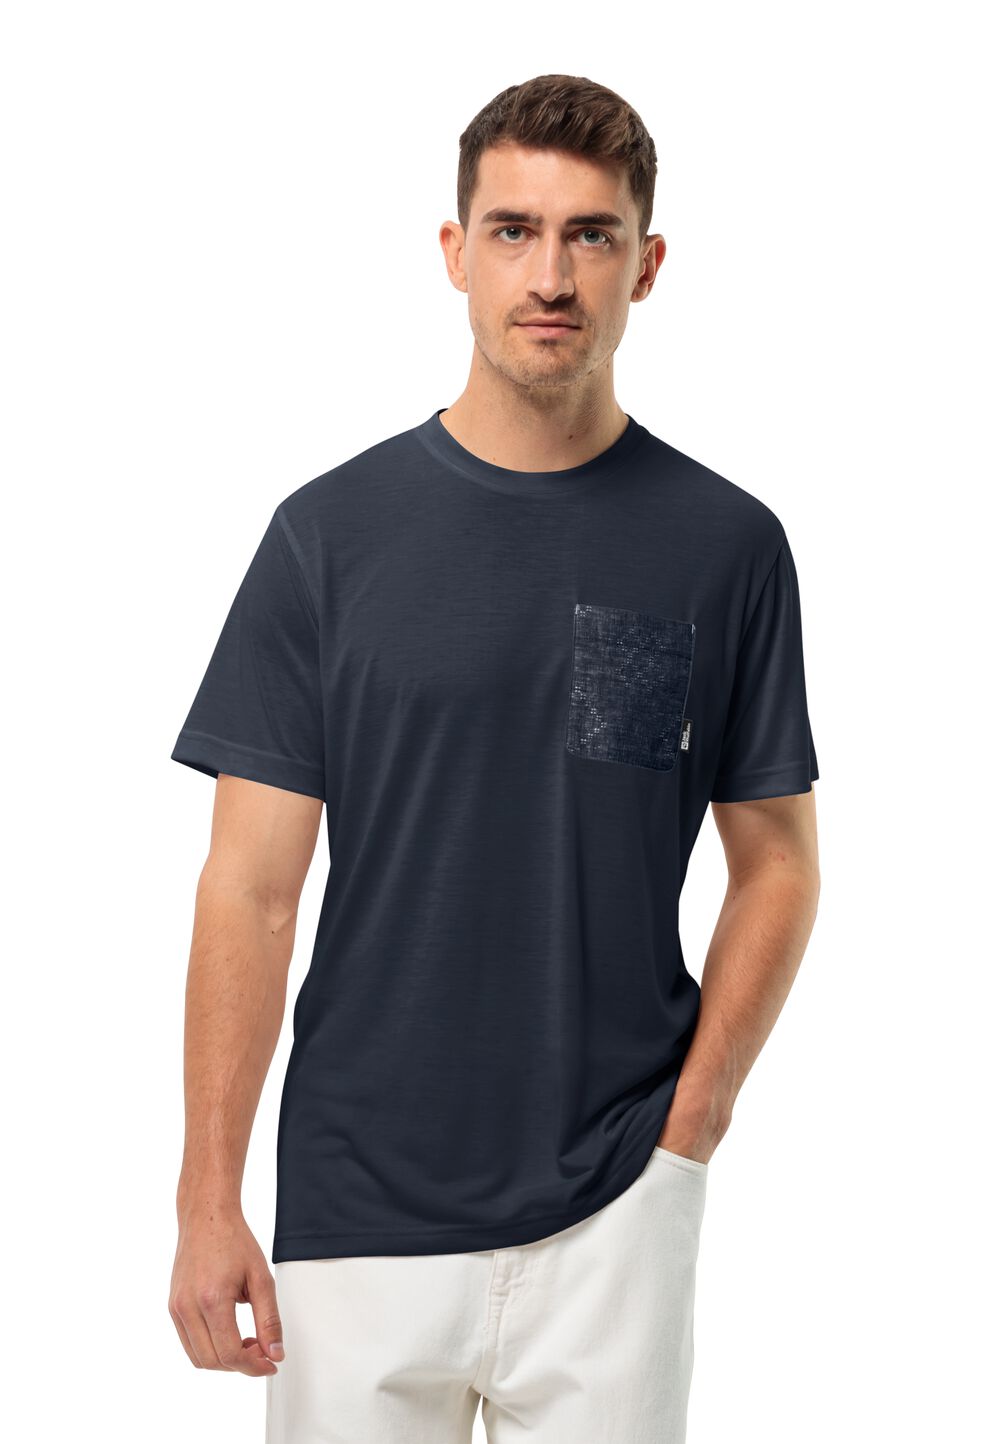 Jack Wolfskin Pocket Karana T-Shirt Men Functioneel shirt Heren XL blue night blue